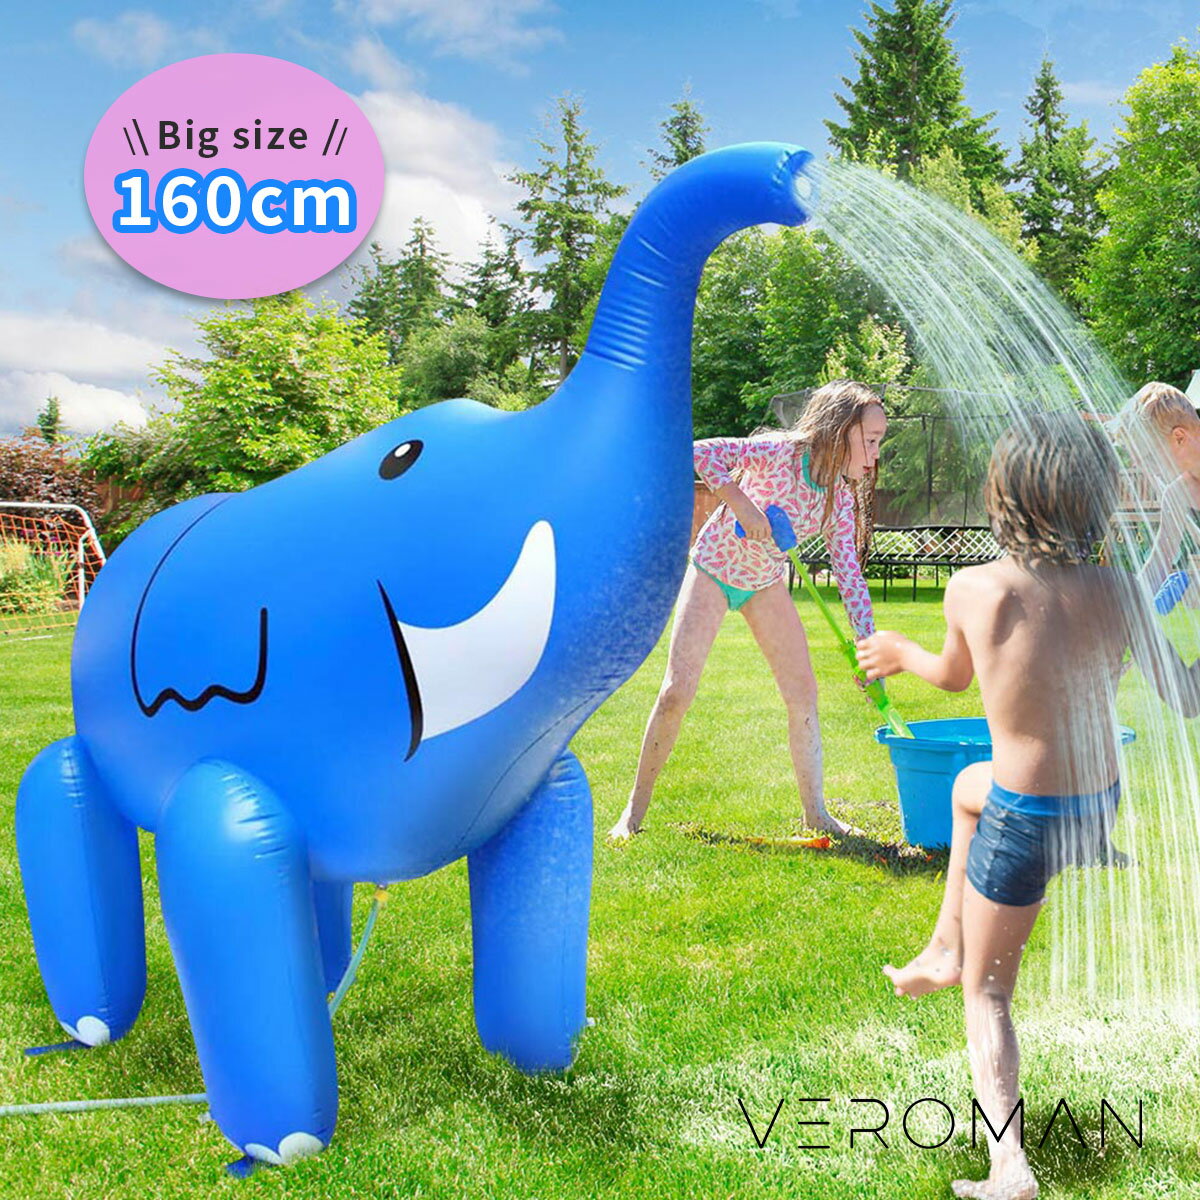  VeroMan 水遊び 噴水 シャワー ぞう 像 大型 ホースに繋ぐだけ スプラッシュ プール 子ども 庭 ビーチ おもちゃ インフレータブル エレファント